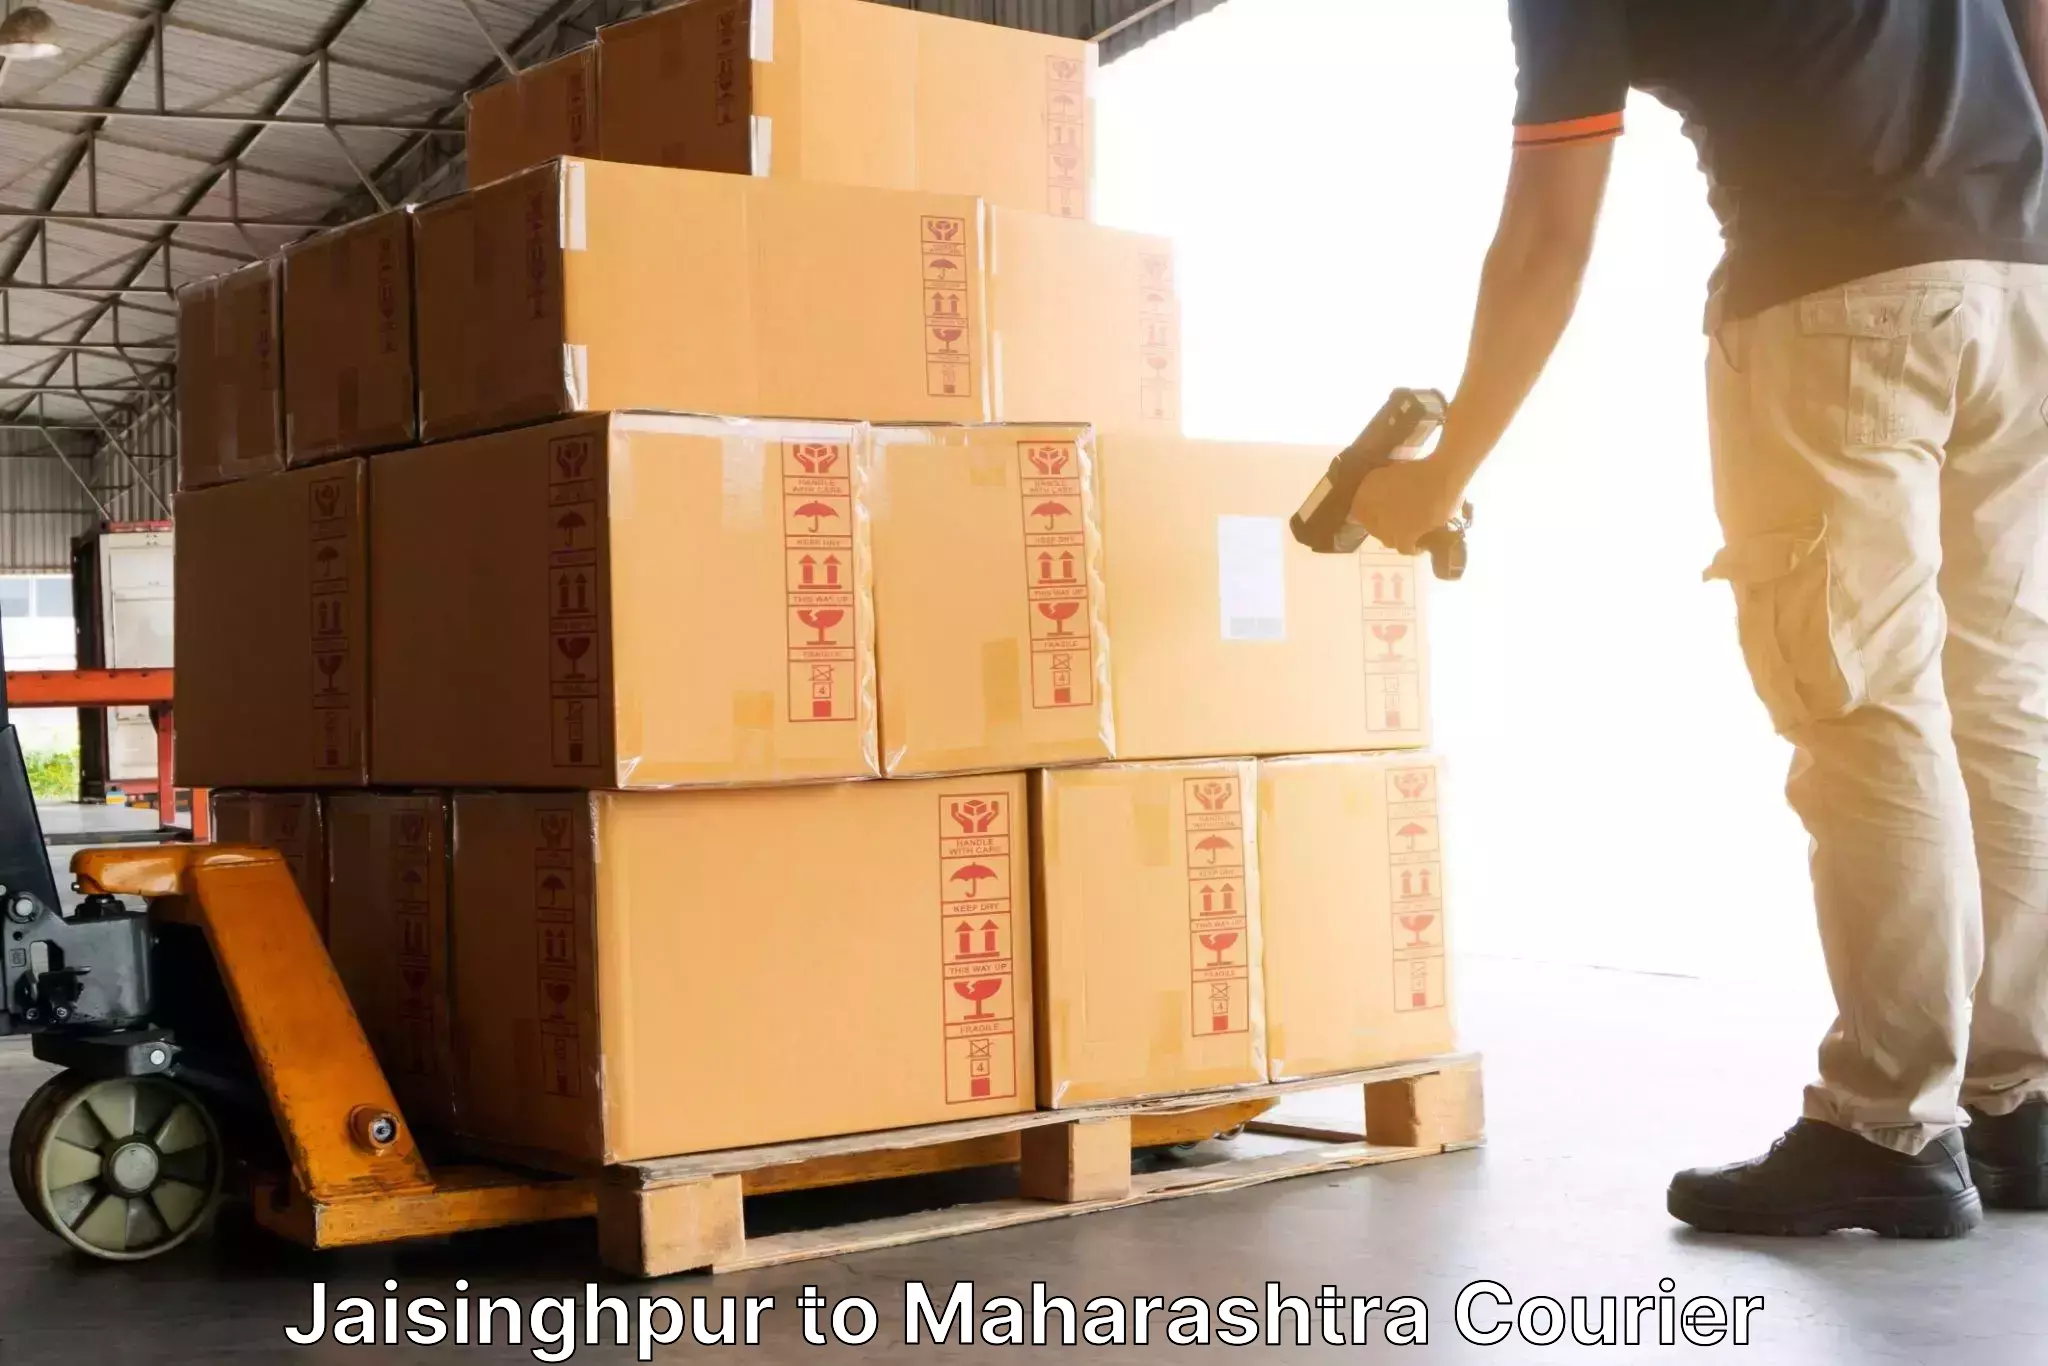 Bulk order courier Jaisinghpur to Jafrabad Jalna